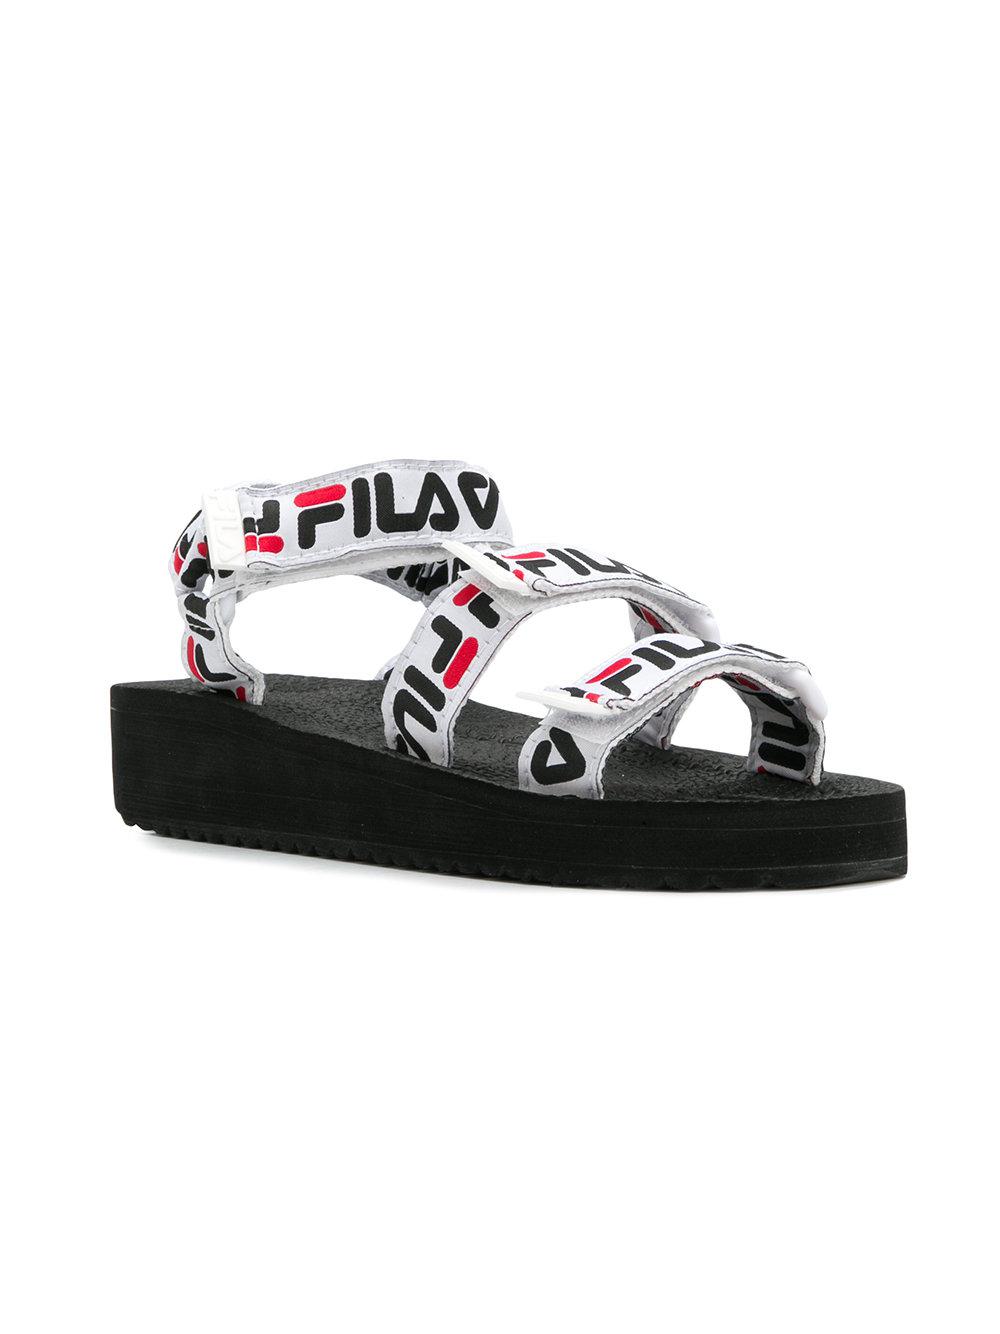 fila sandals white